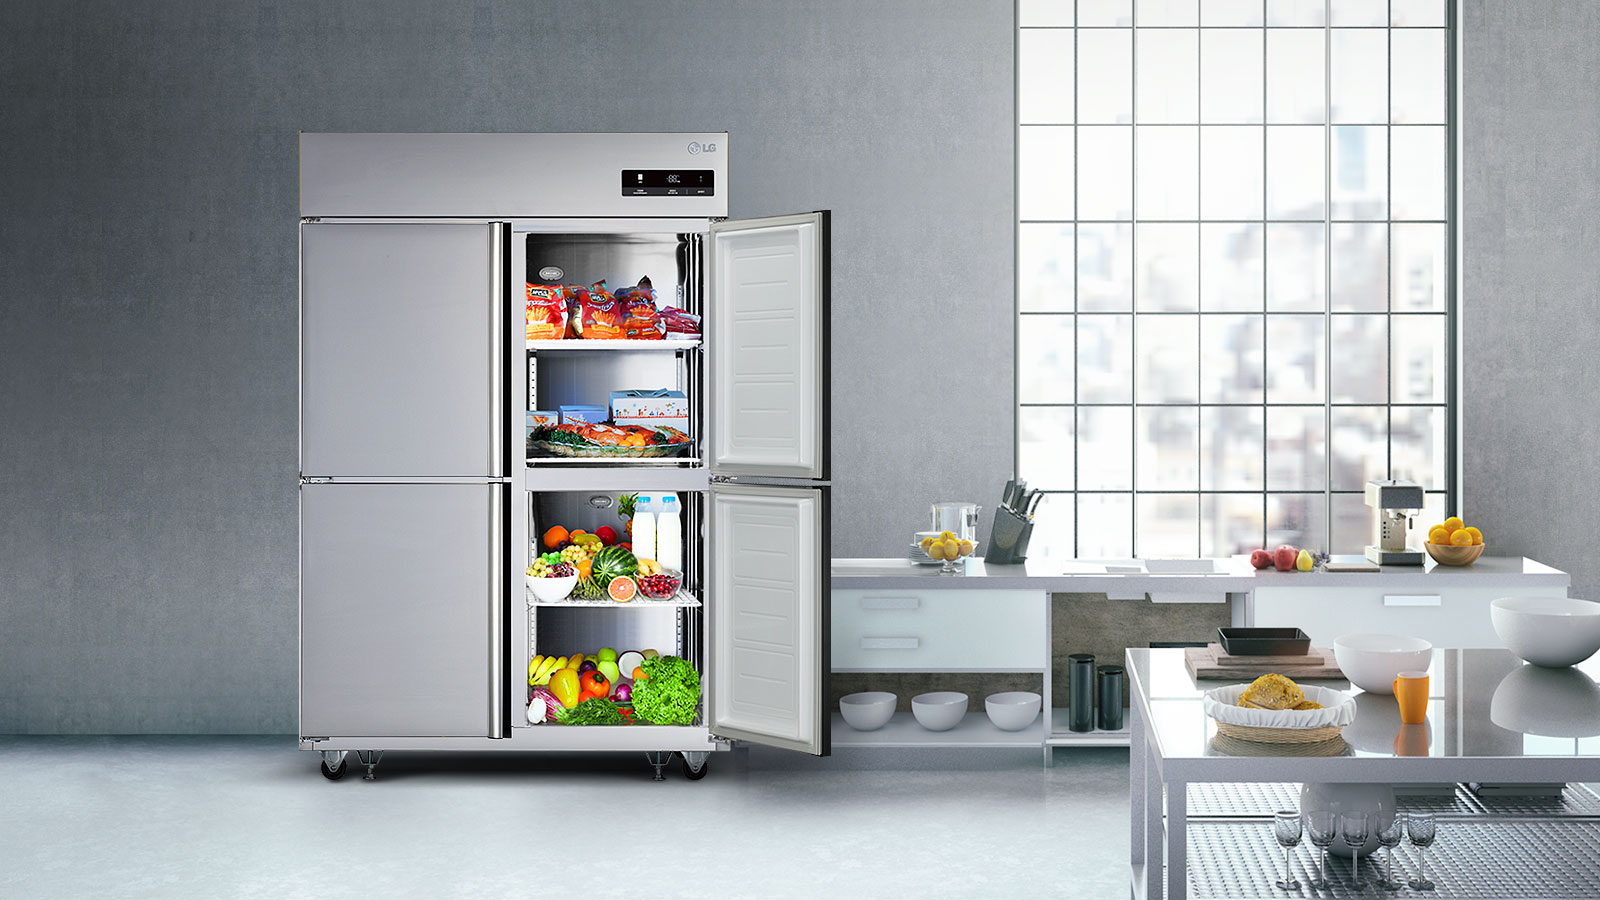 요식업의 성공을 부르는 LG 비즈니스 냉장고1